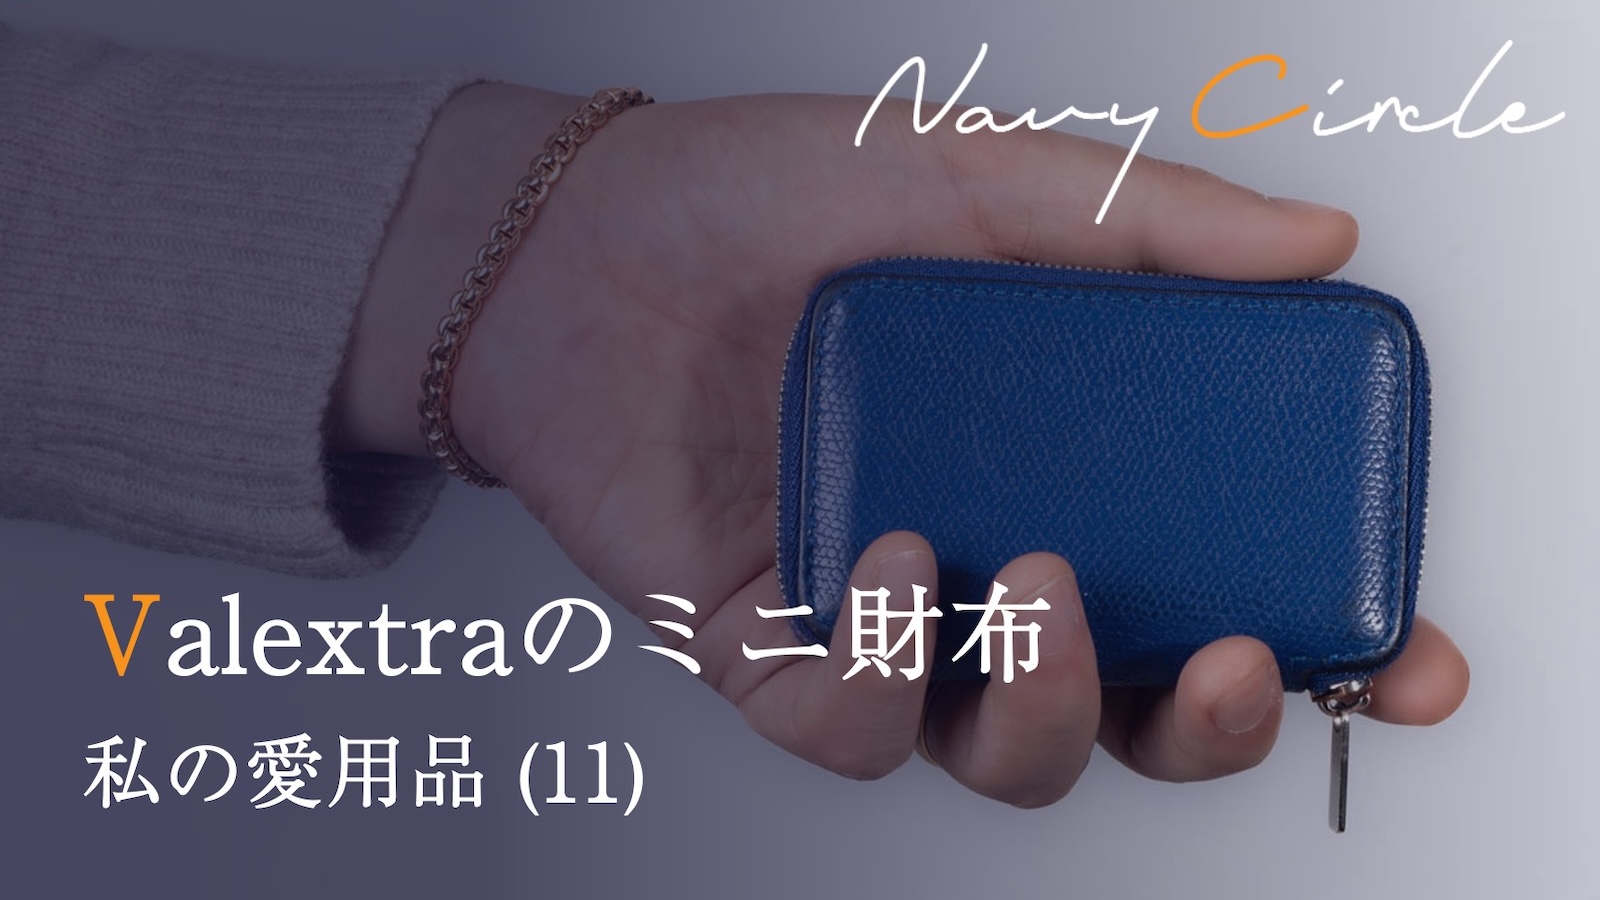 私の愛用品 (11) Valextraのミニ財布